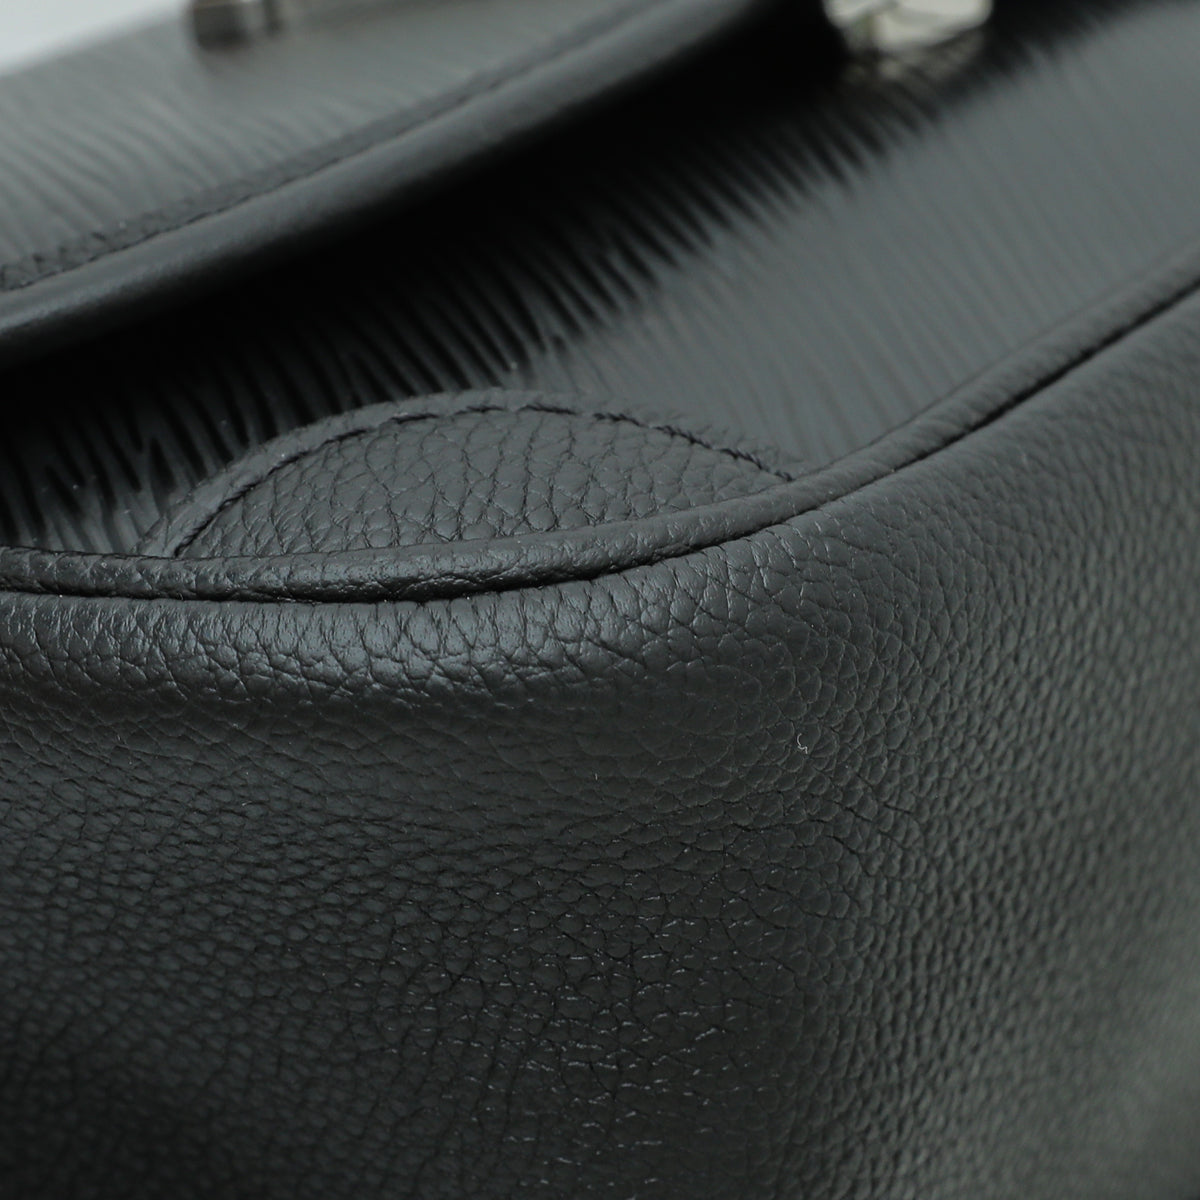 Louis Vuitton Black Buci Bag